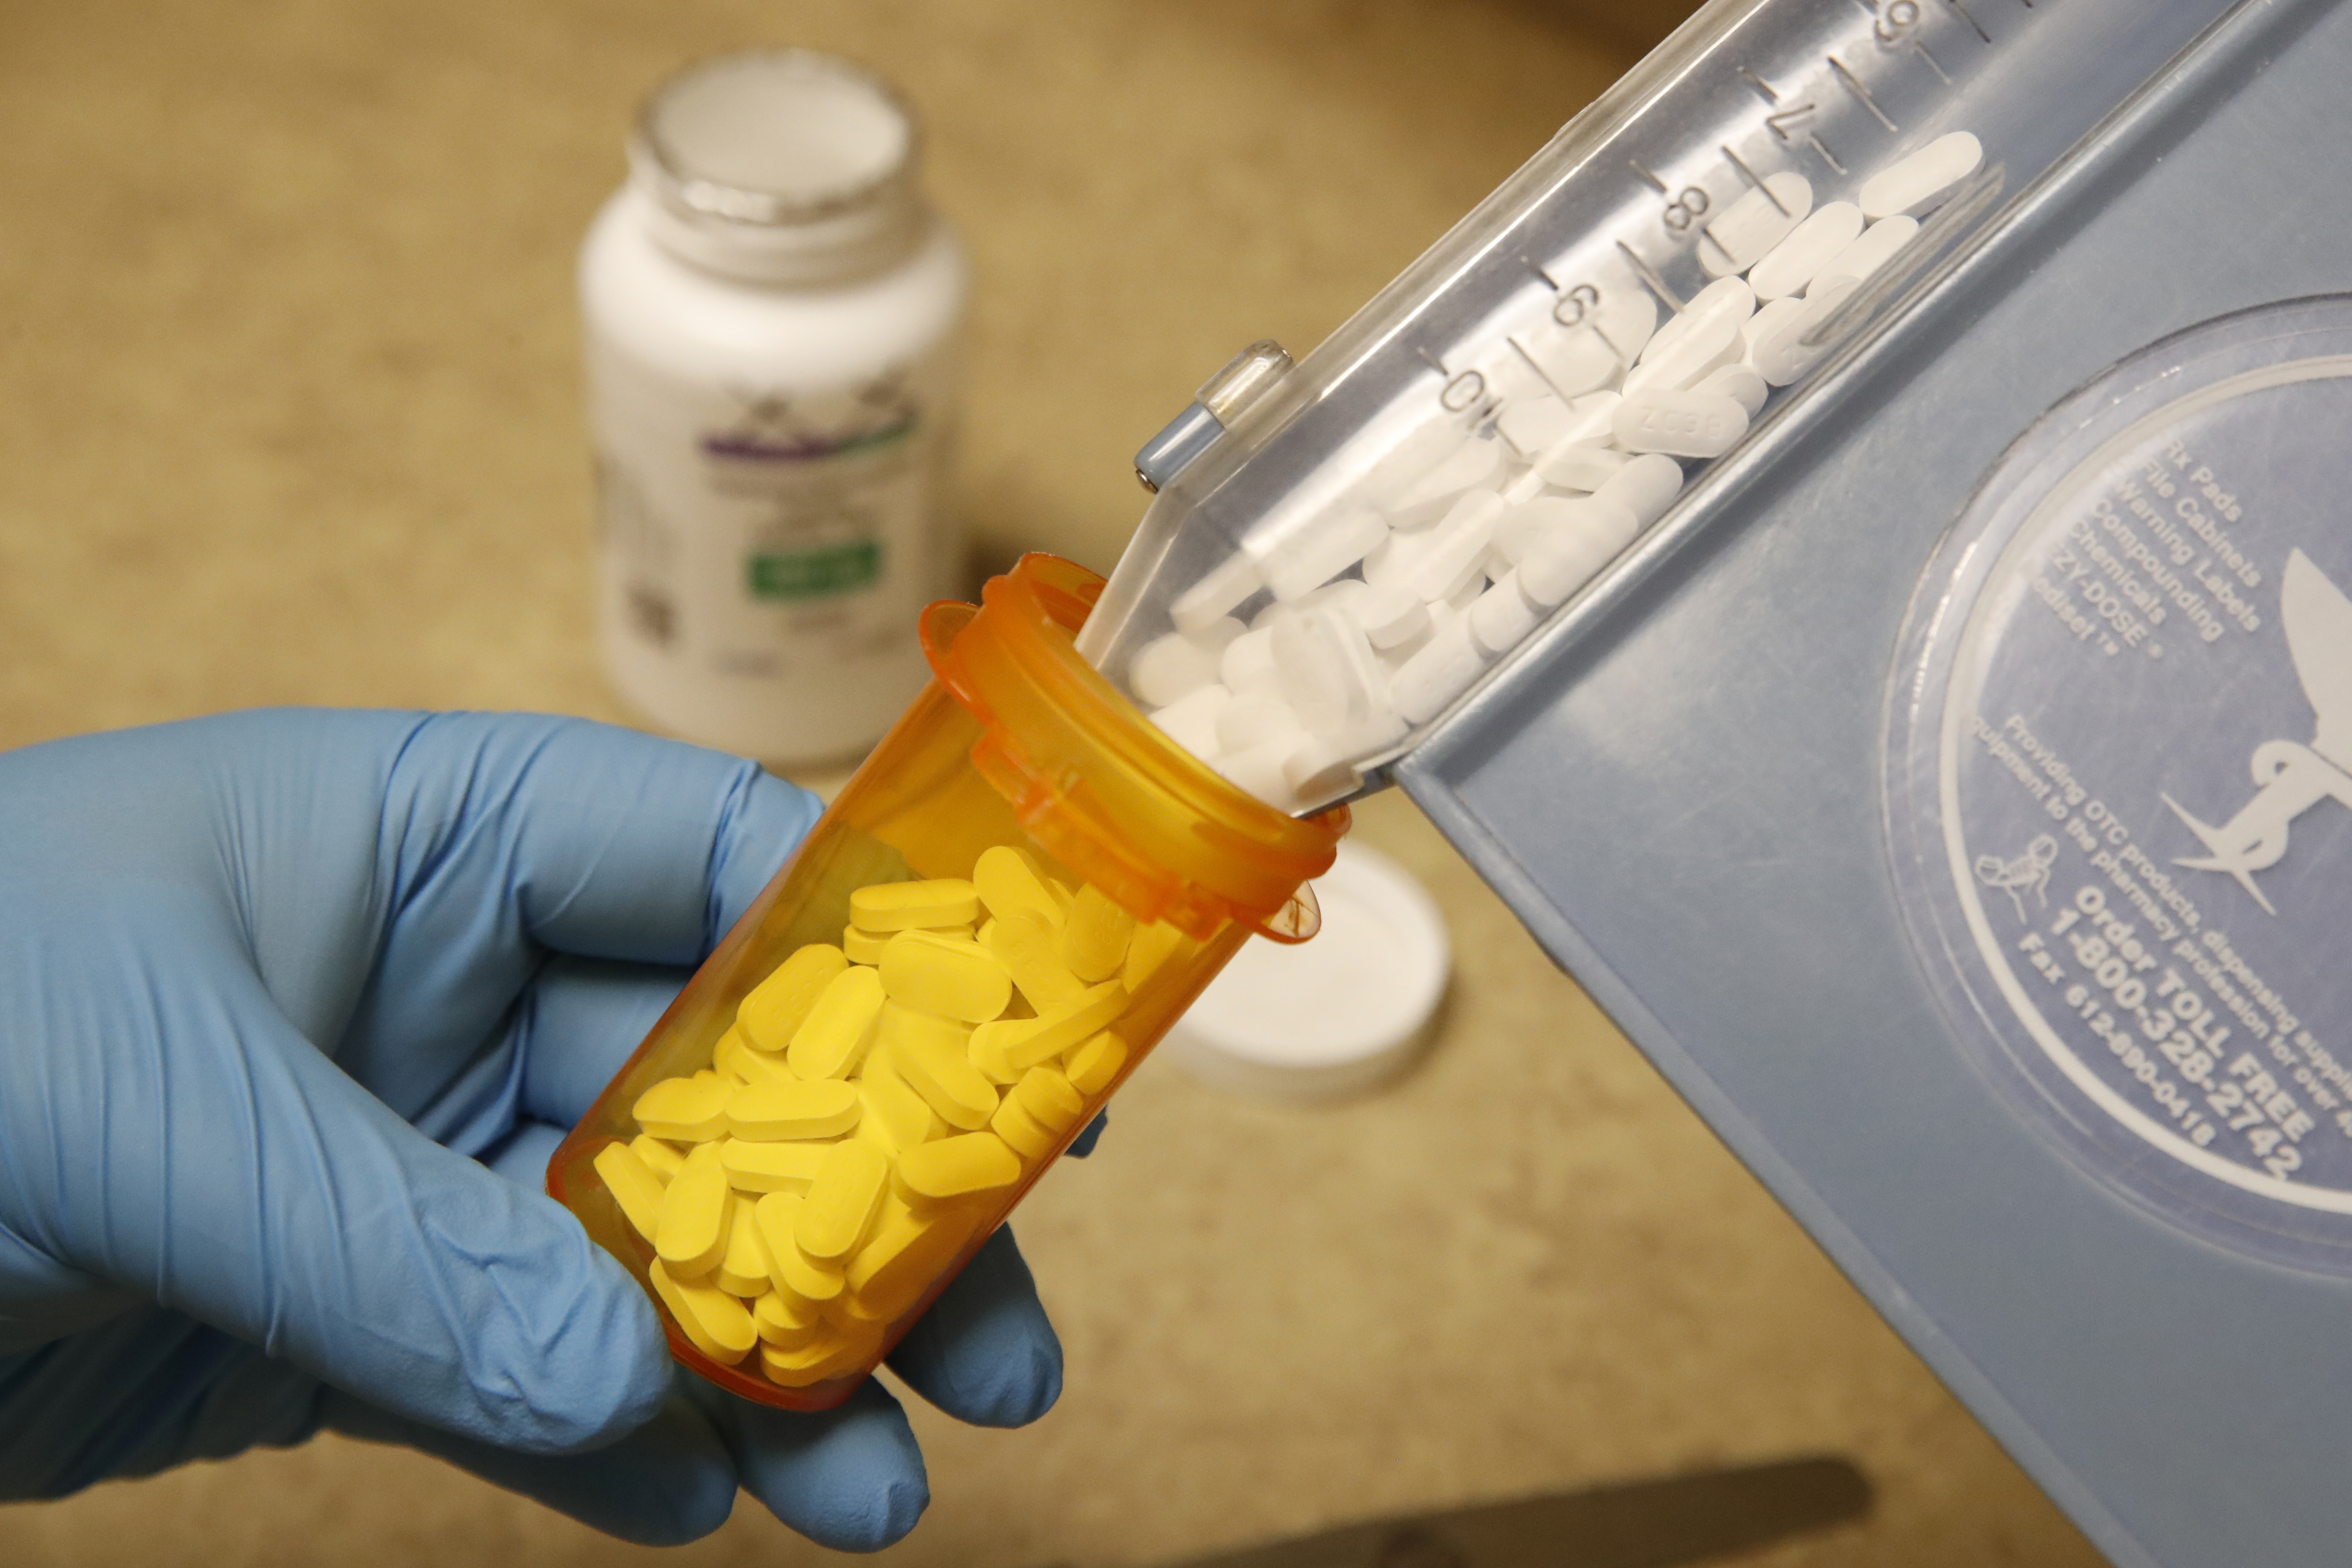 Hidroxi-klorokin tabletták az amerikai Rock Canyon Pharmacy gyógyszergyárban